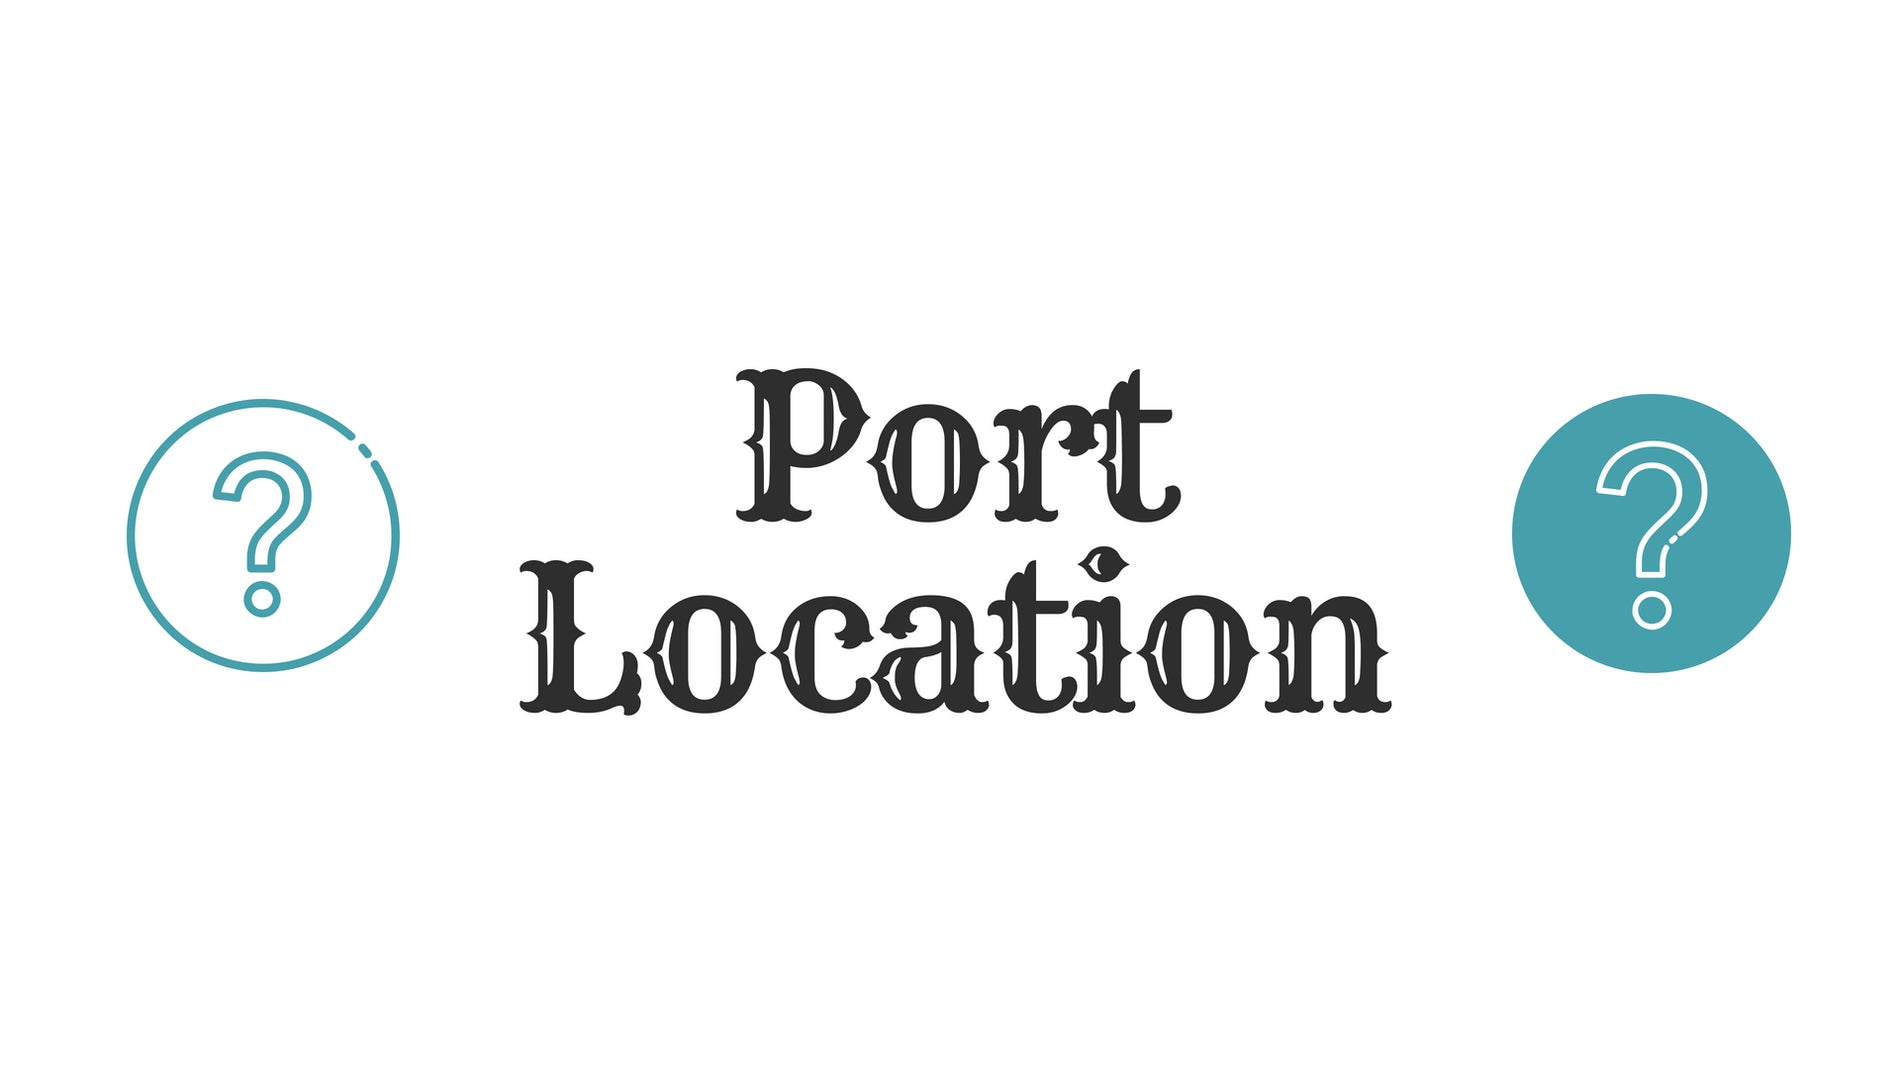 Where Is The Nearest Port To The Dotrade Warehouse? / Dotrade仓库附近有什么港口？/ 두트레이드 창고에서 가장 가까운 항구는 어디인가요?